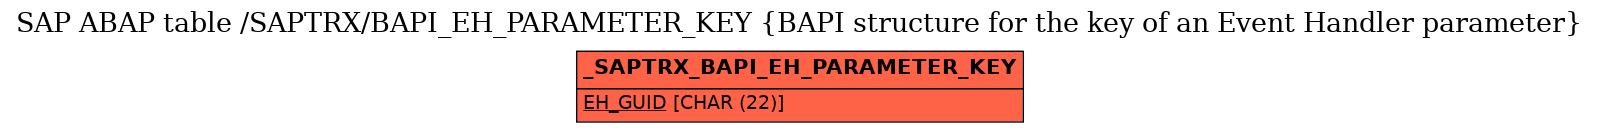 E-R Diagram for table /SAPTRX/BAPI_EH_PARAMETER_KEY (BAPI structure for the key of an Event Handler parameter)